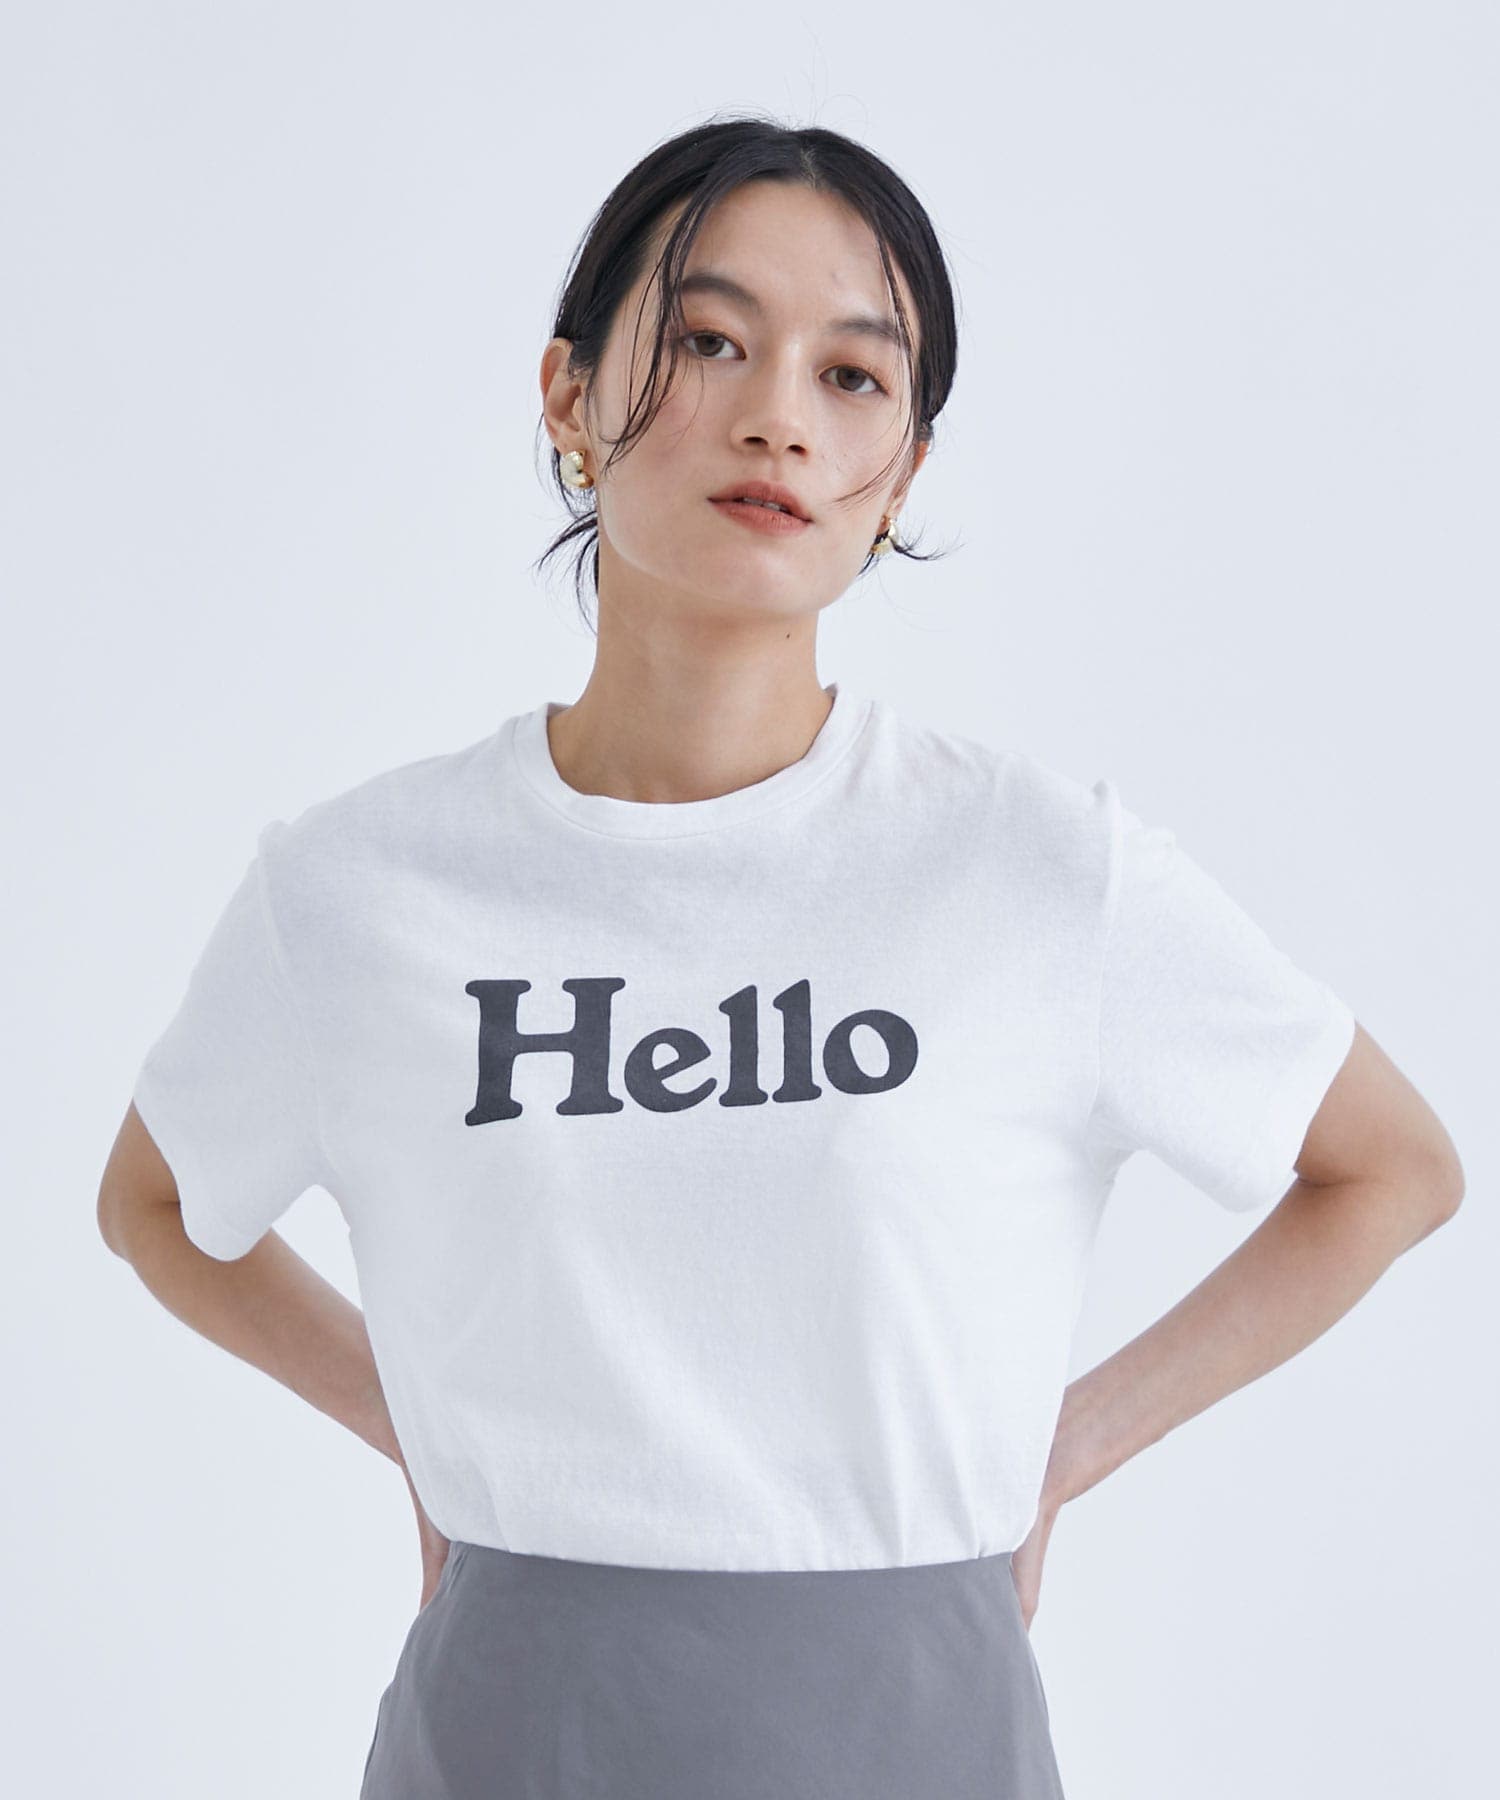 《MADISONBLUE》HELLO クルーネック Tシャツ ◆サイズ01